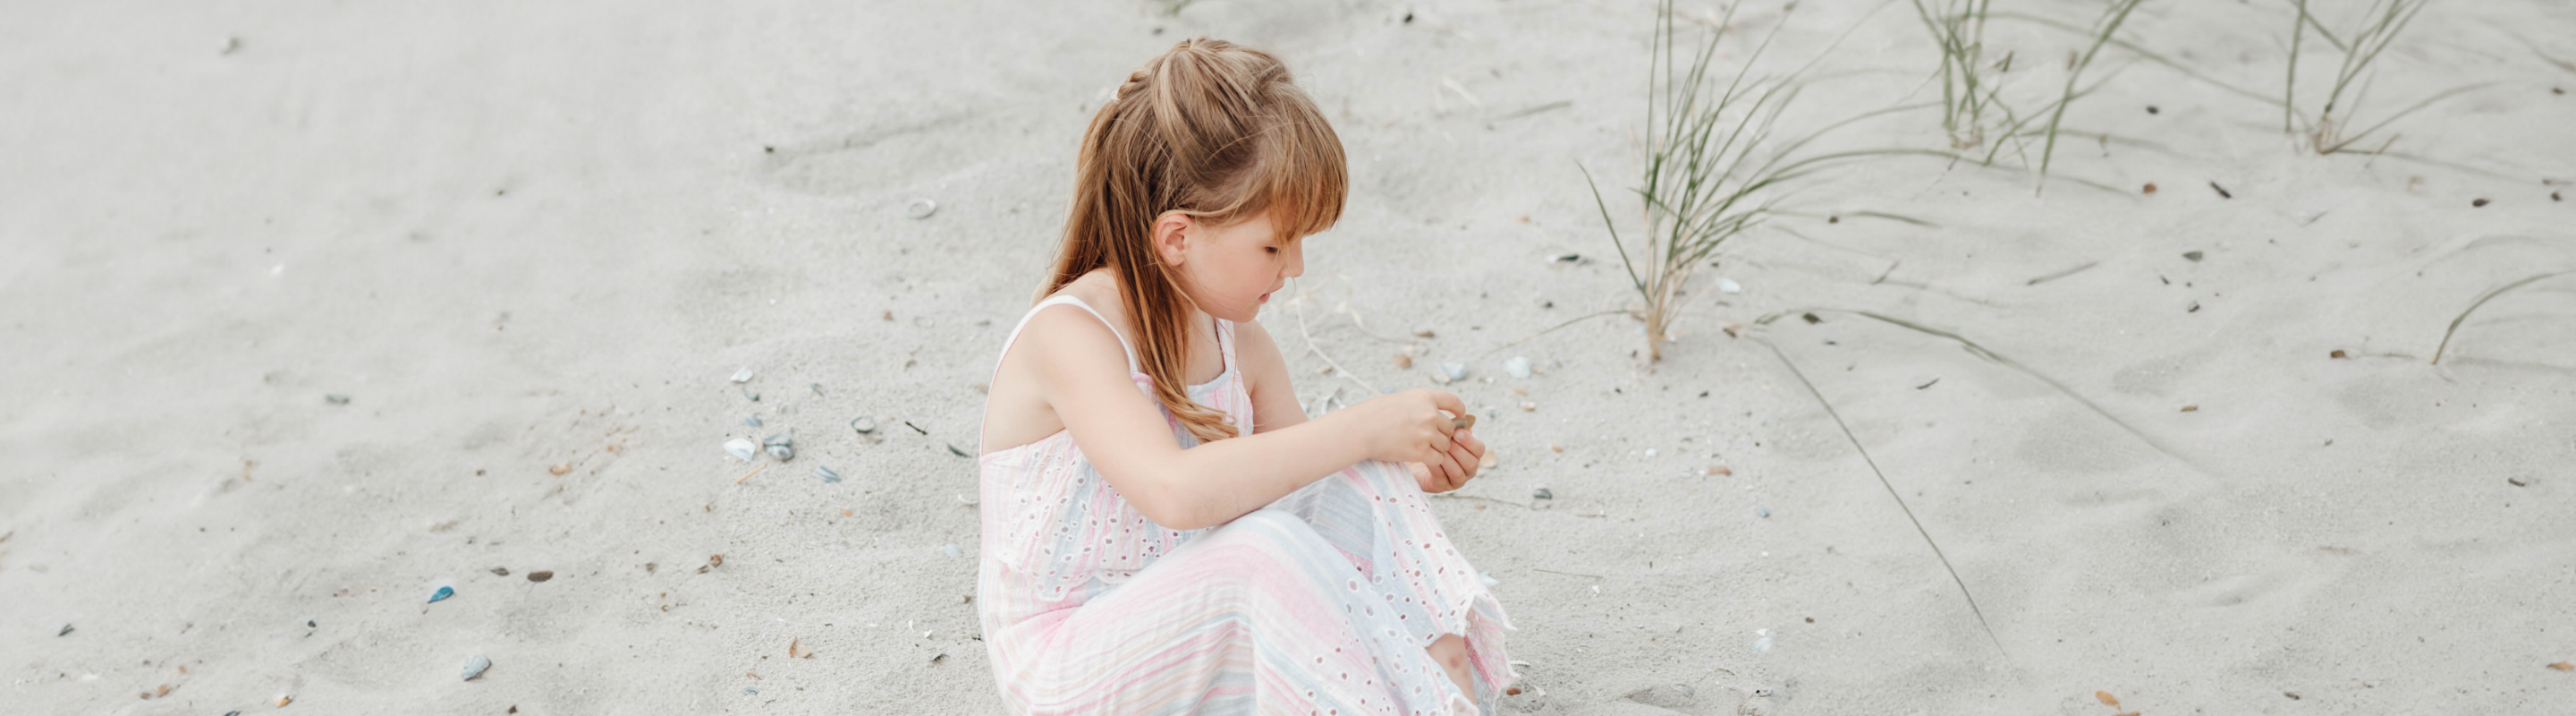 Cadeaux pour une fille de 6 ans : 10 conseils pour des cadeaux originaux